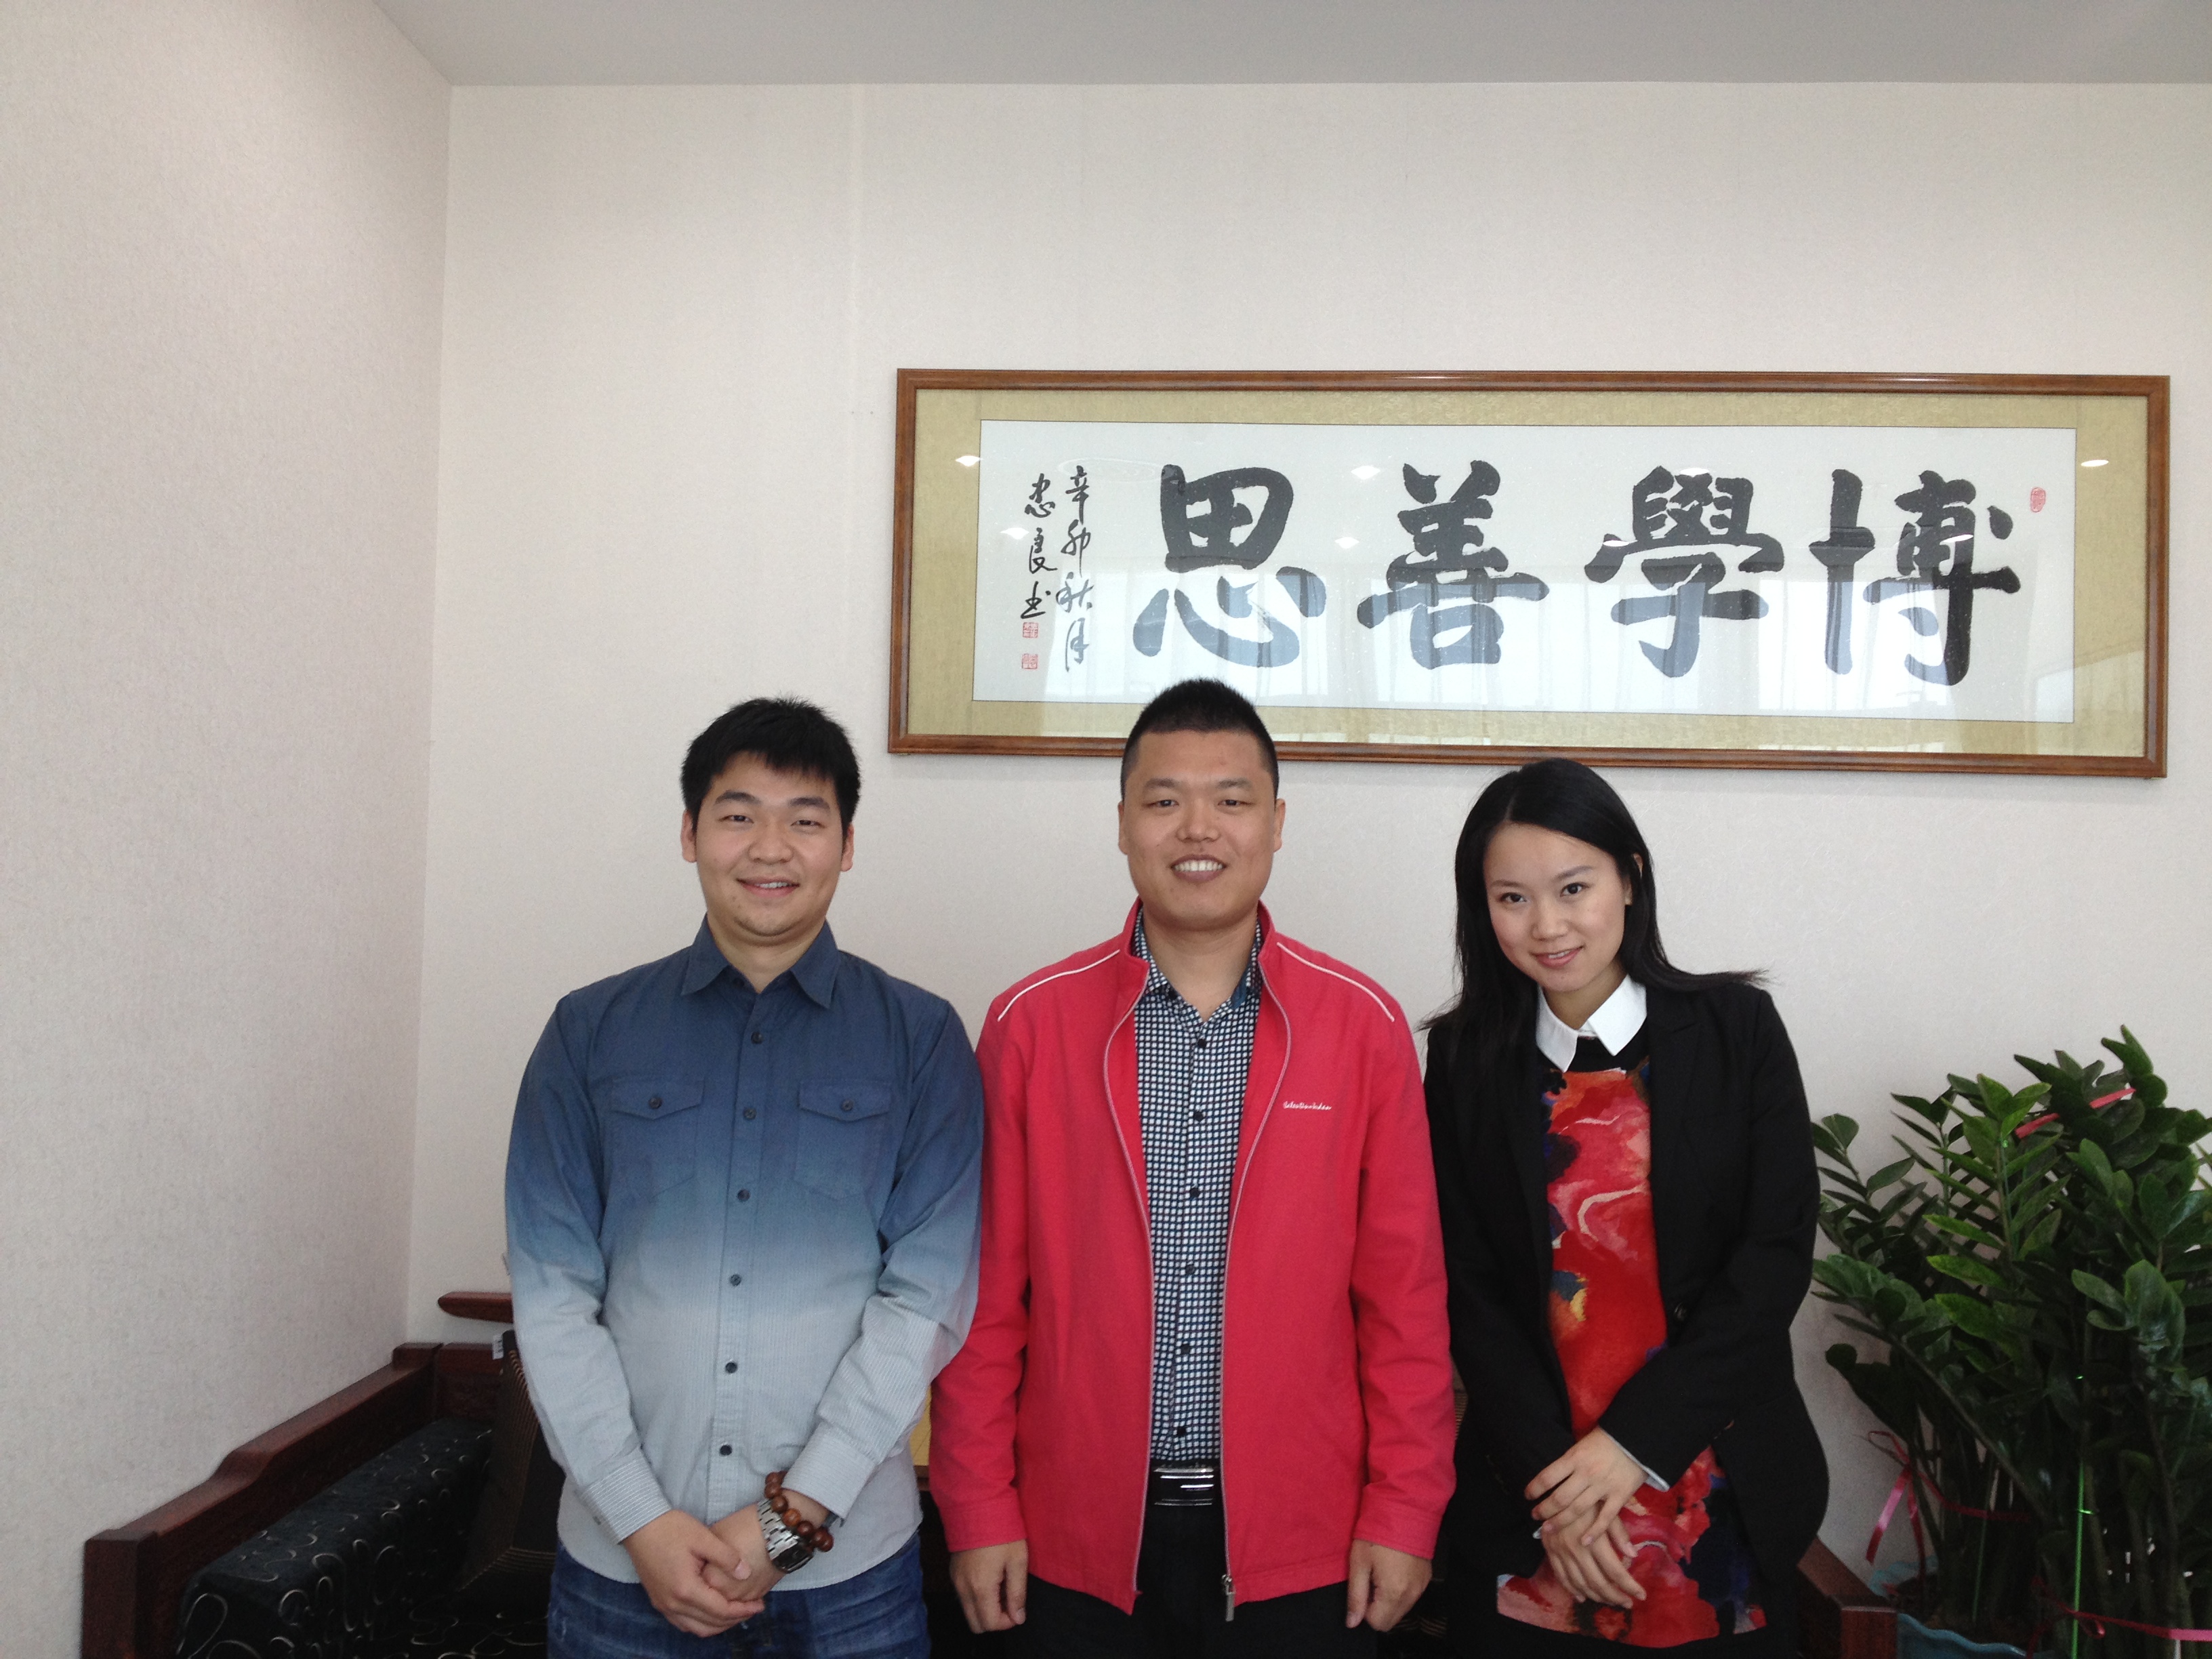 我所与深圳市幕威文化传播有限公司成为合作伙伴